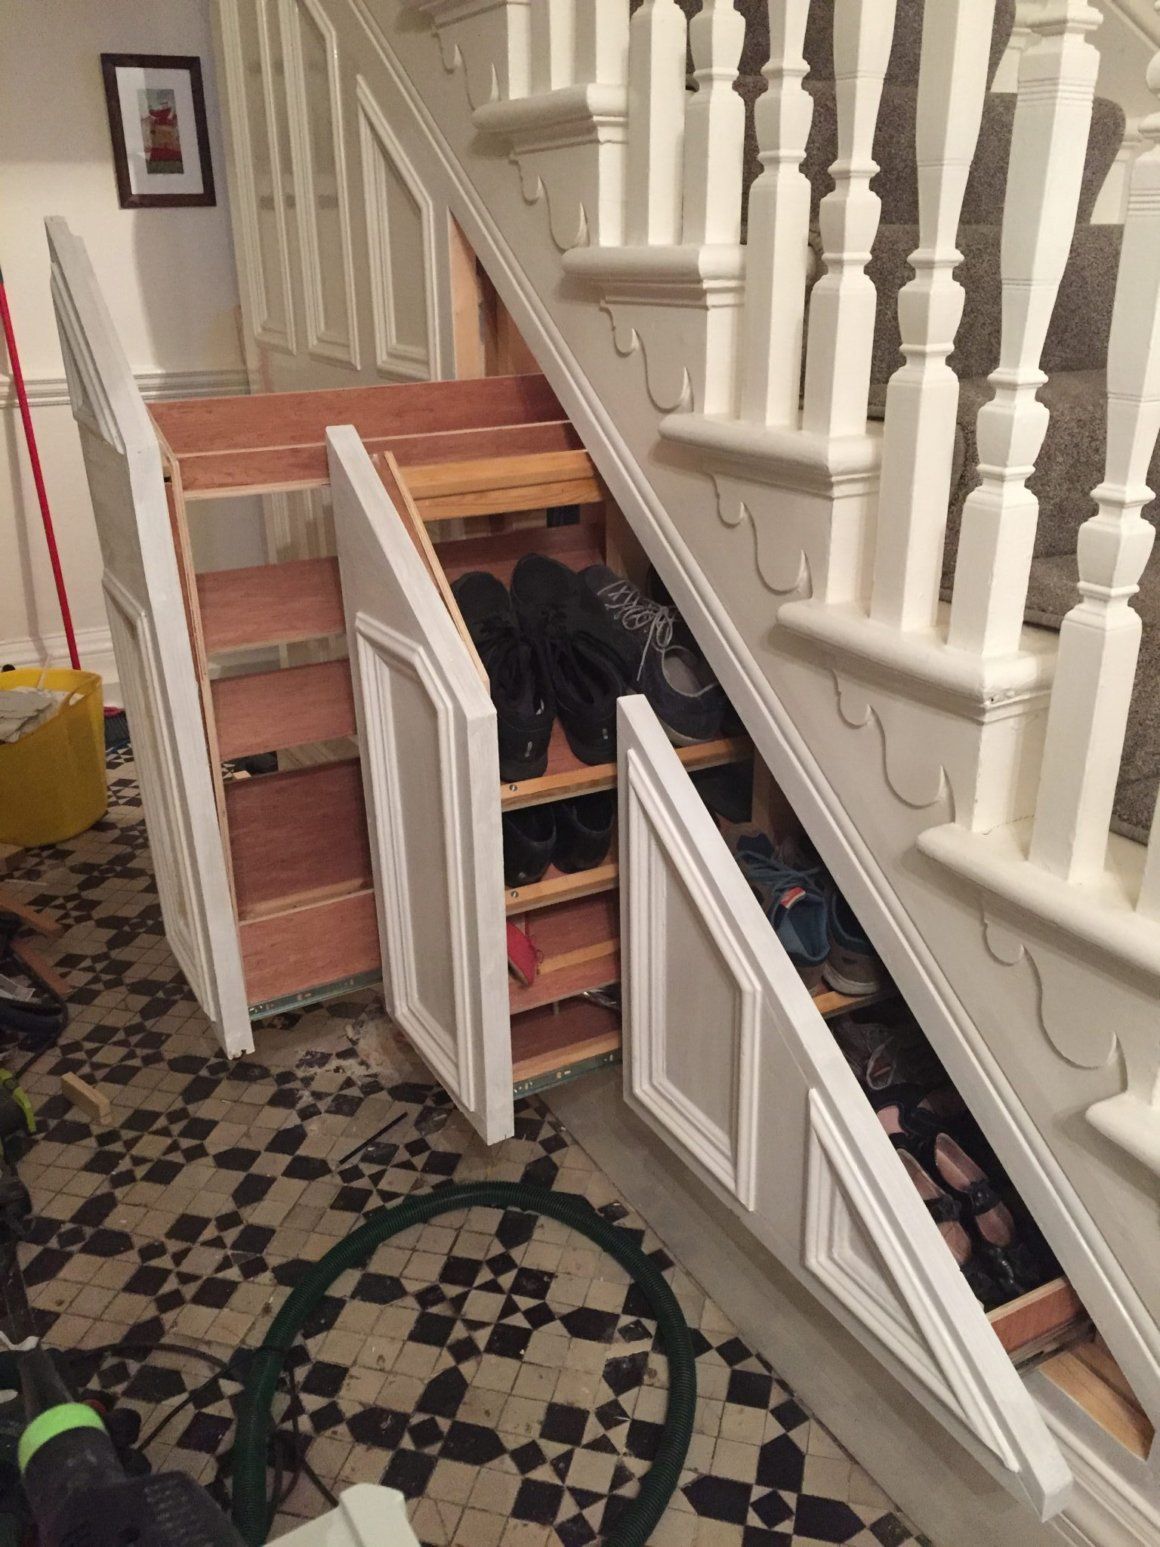 کاربرد پله و زیر پله در منازل کوچک